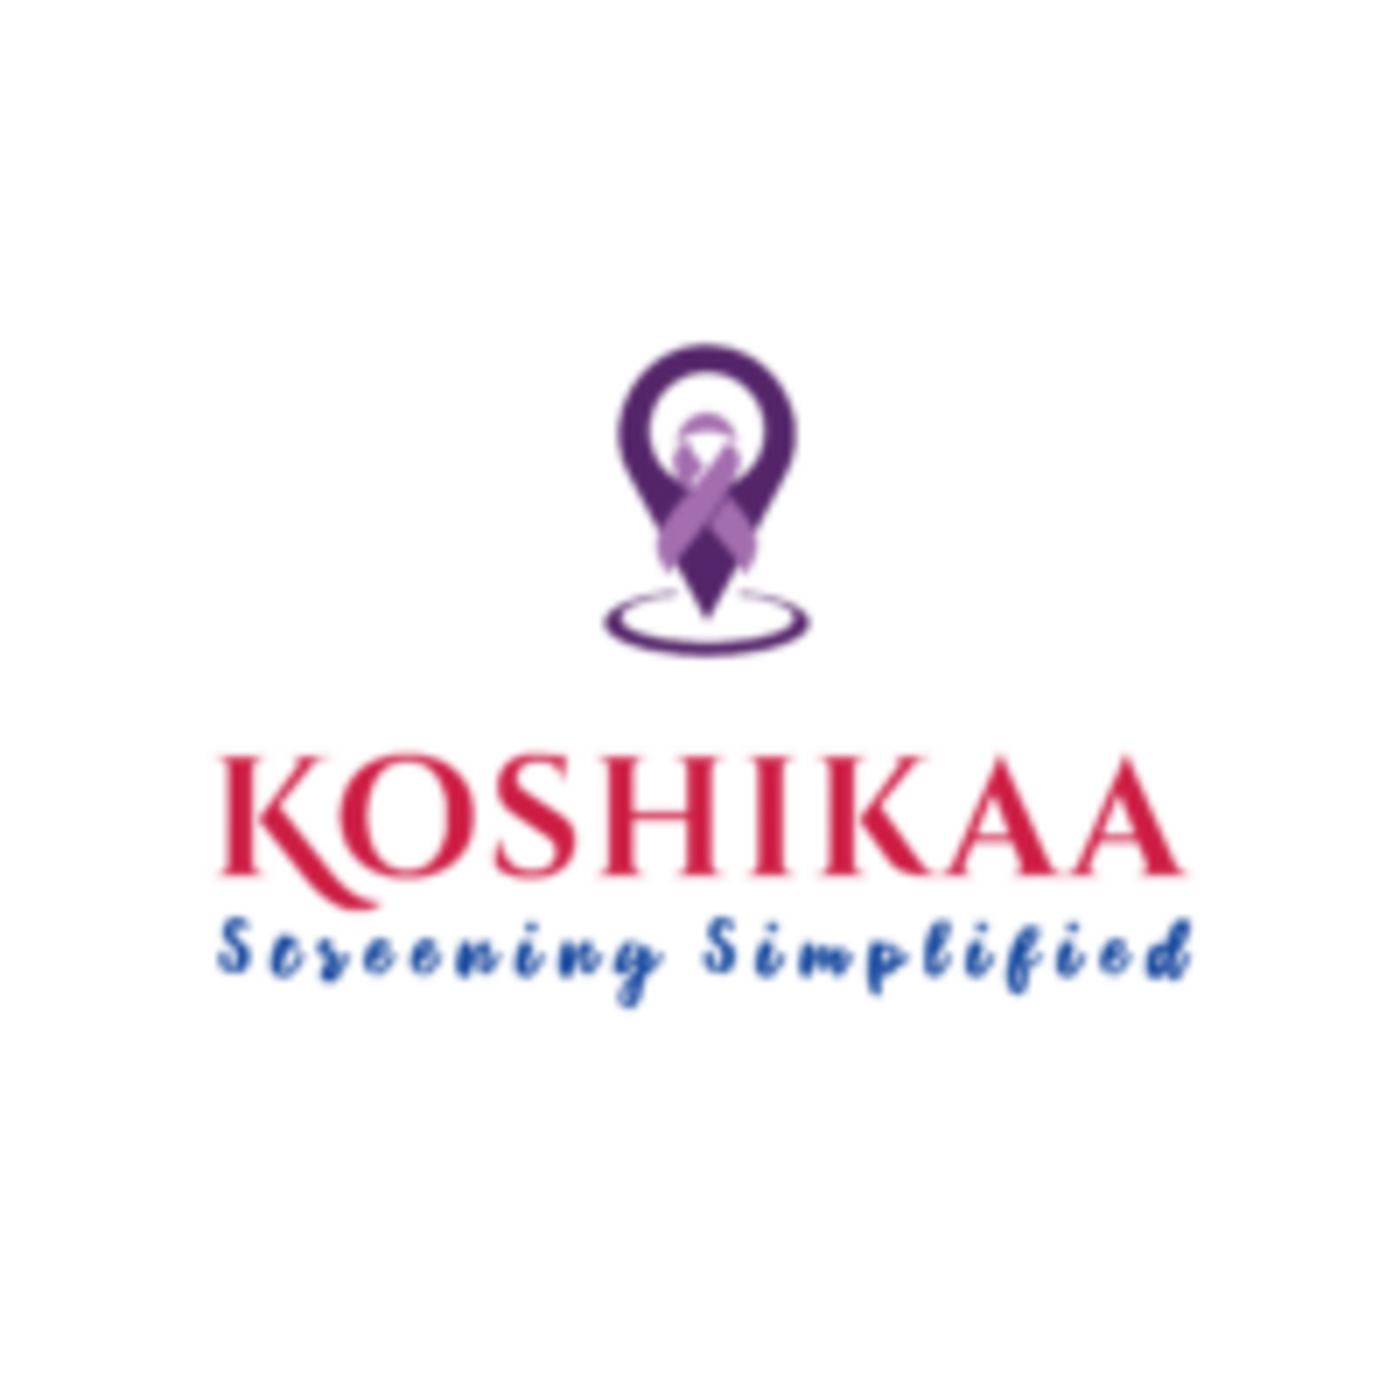 Company logo of koshikaa Health Screening Centers